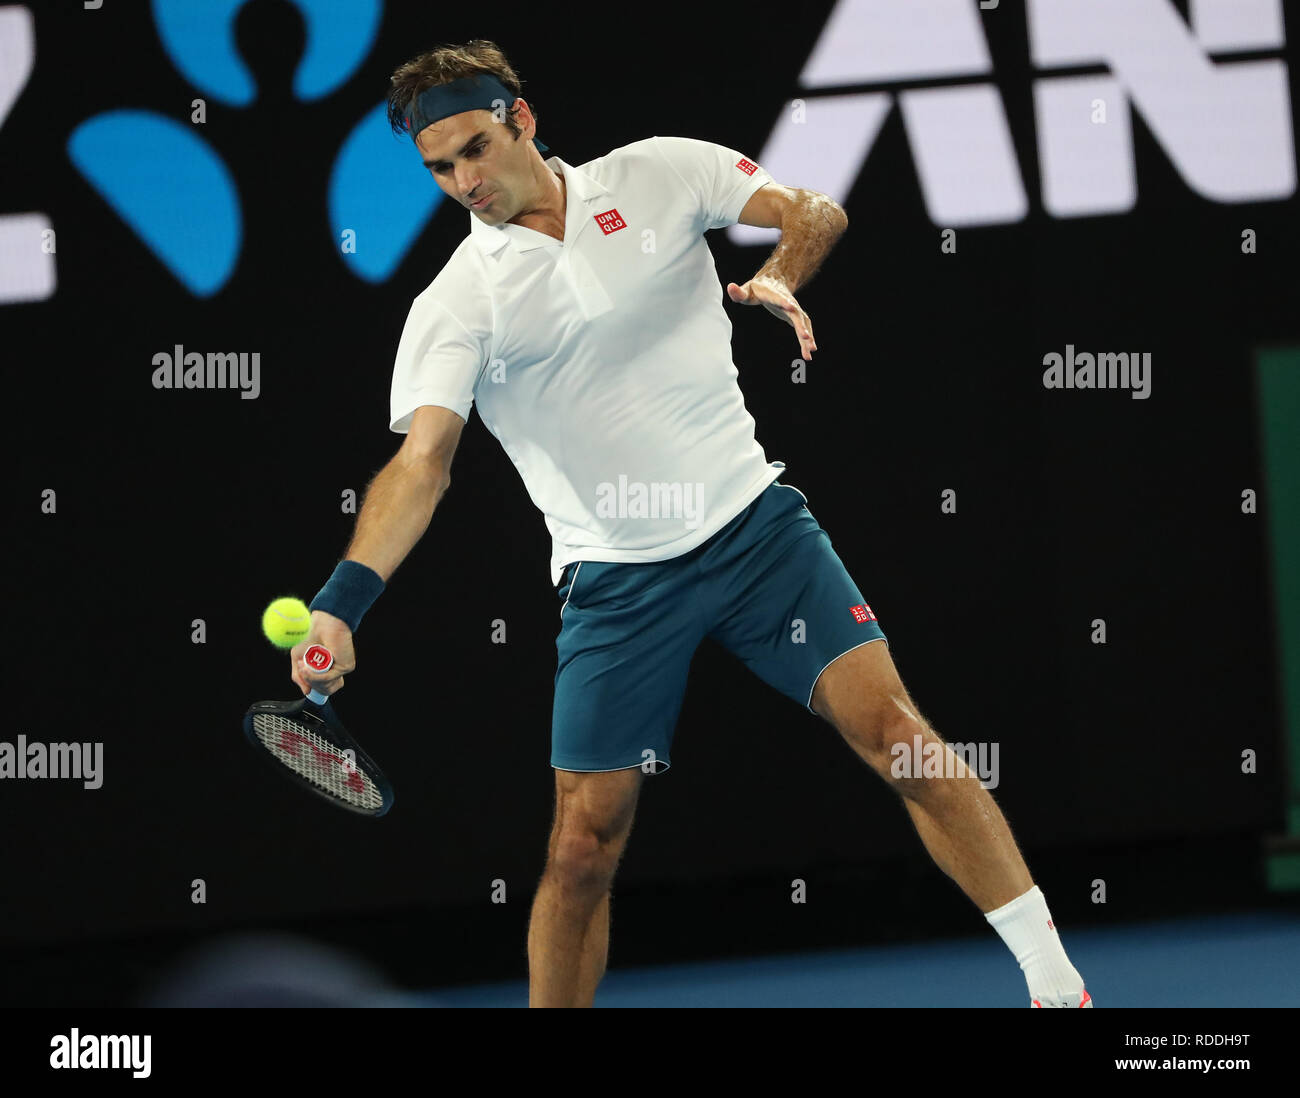 Melbourne Park, Melbourne, Australia. 18th Jan, 2019. Australian Open  Tennis, day 5; Roger Federer of Switzerland